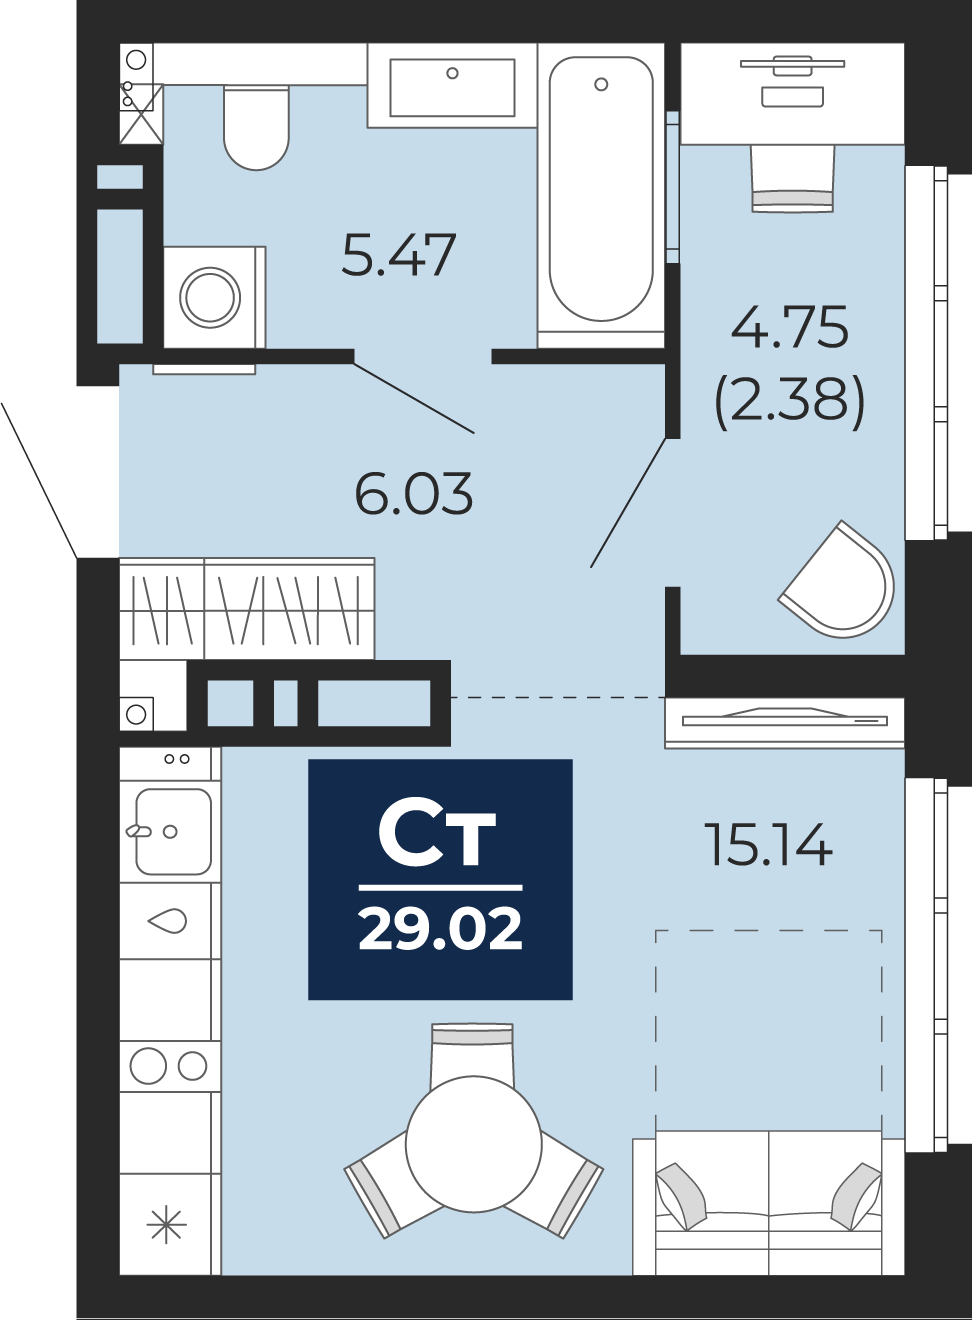 Квартира № 354, Студия, 29.02 кв. м, 9 этаж